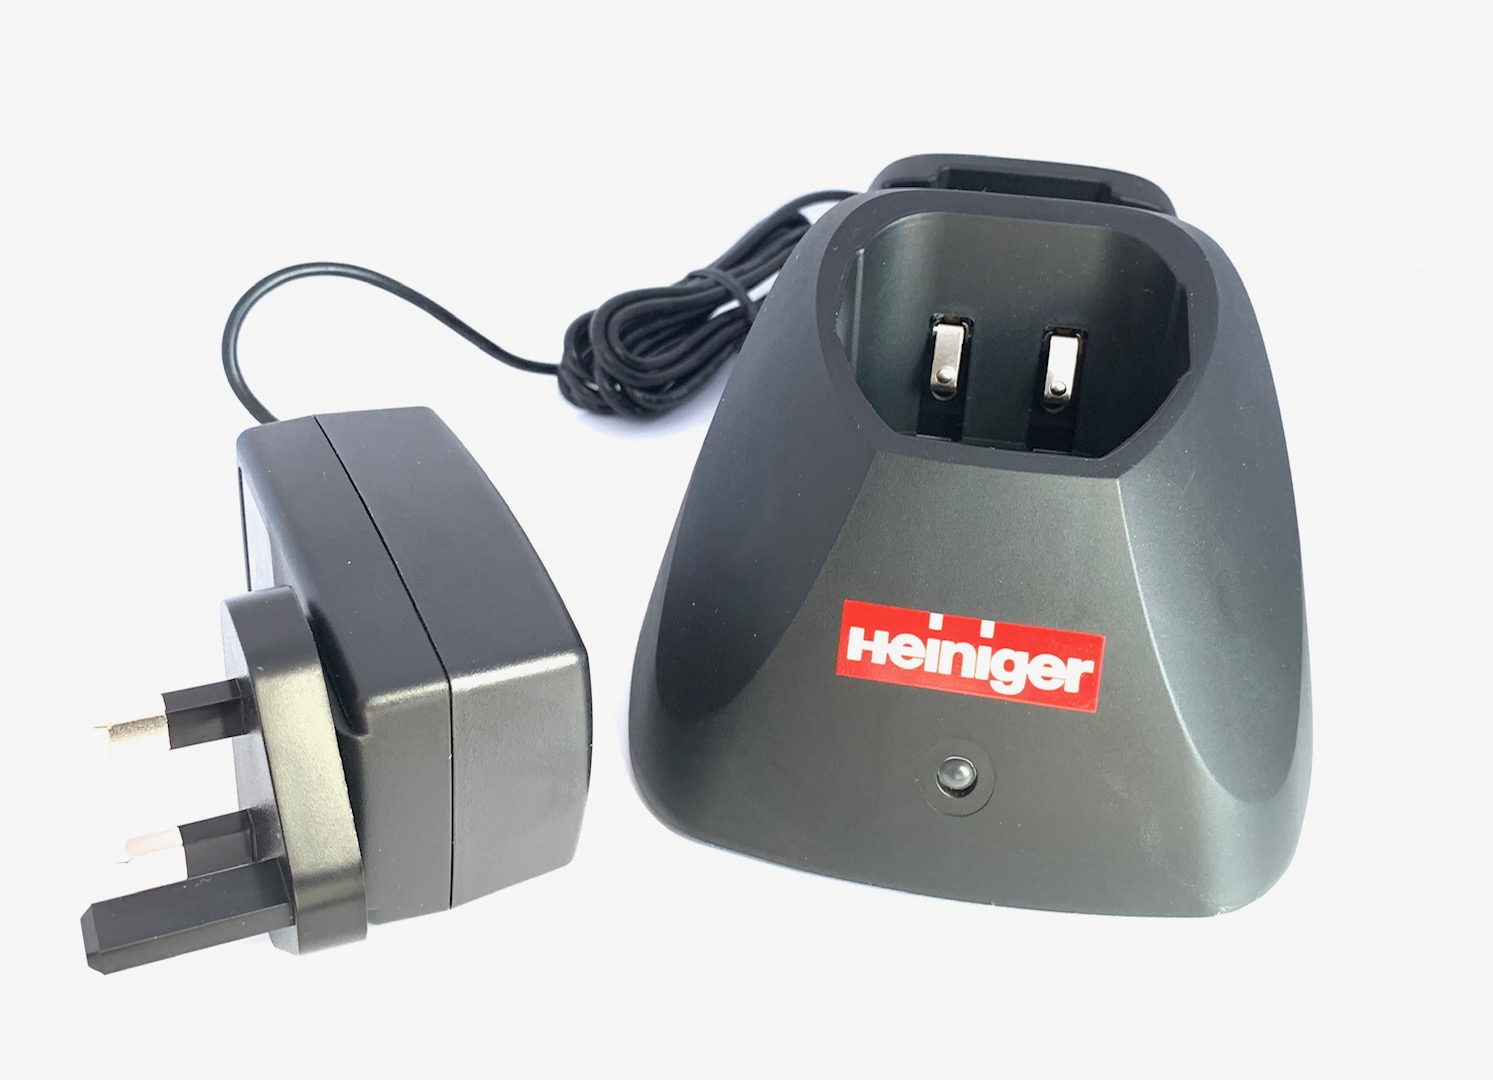 Heiniger Saphir Battery Charger (1 Port)